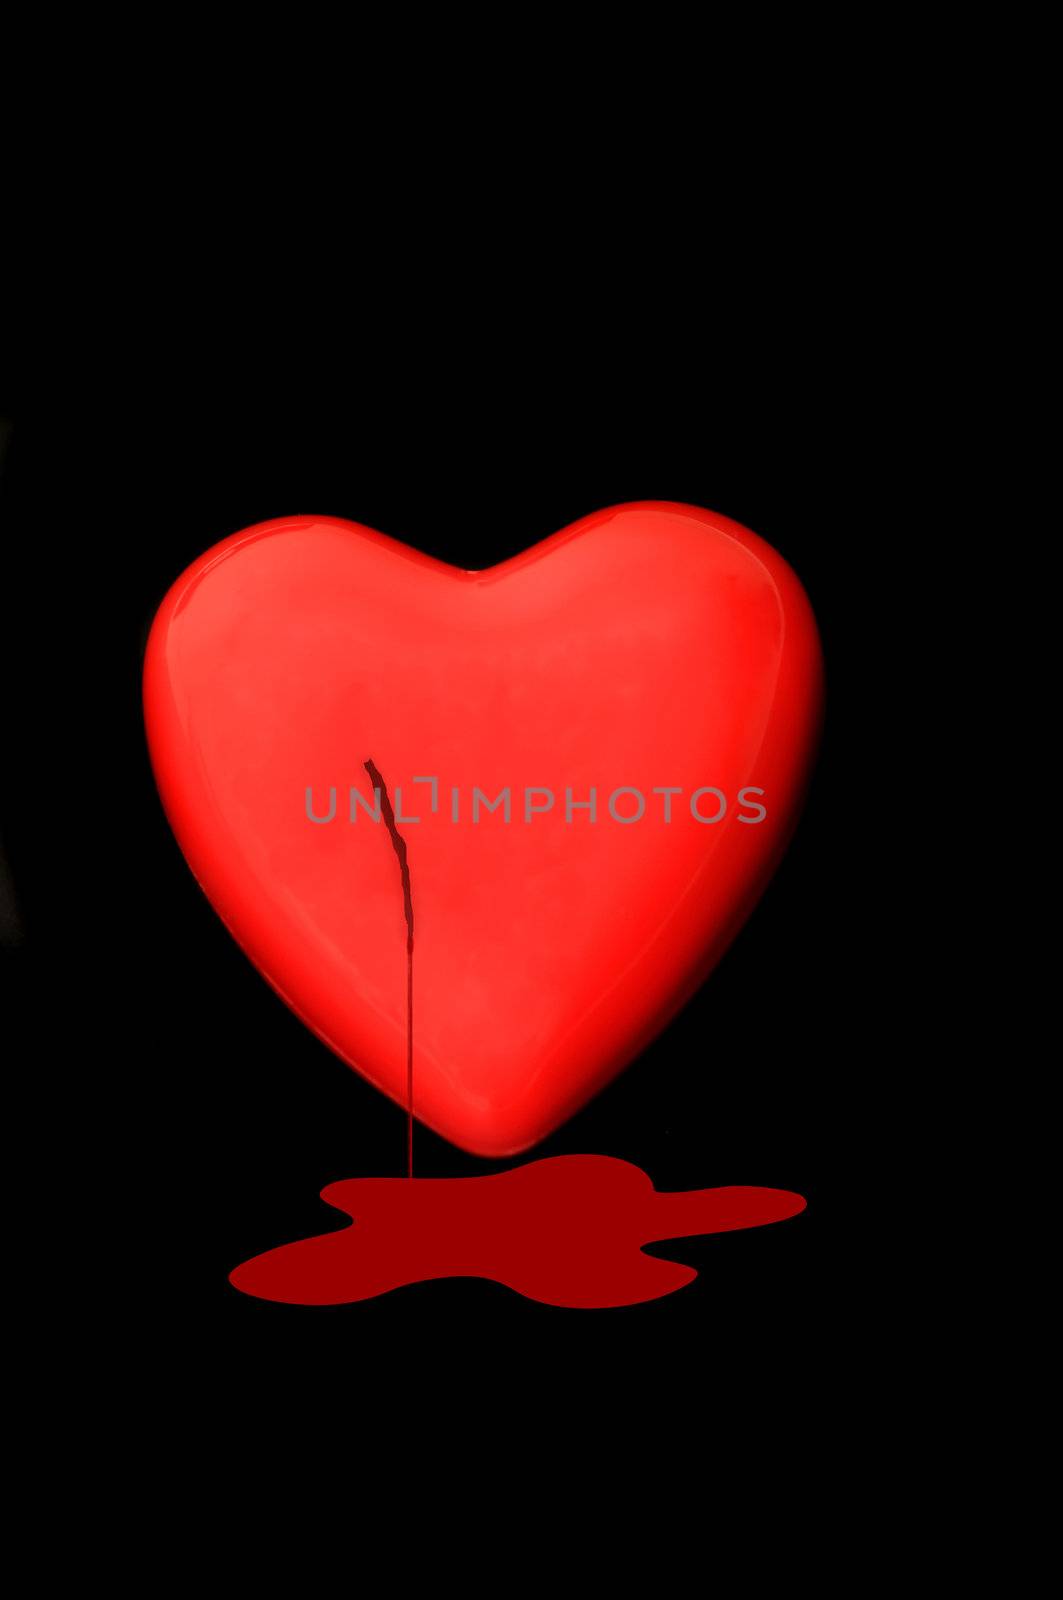 Bleeding heart by pazham